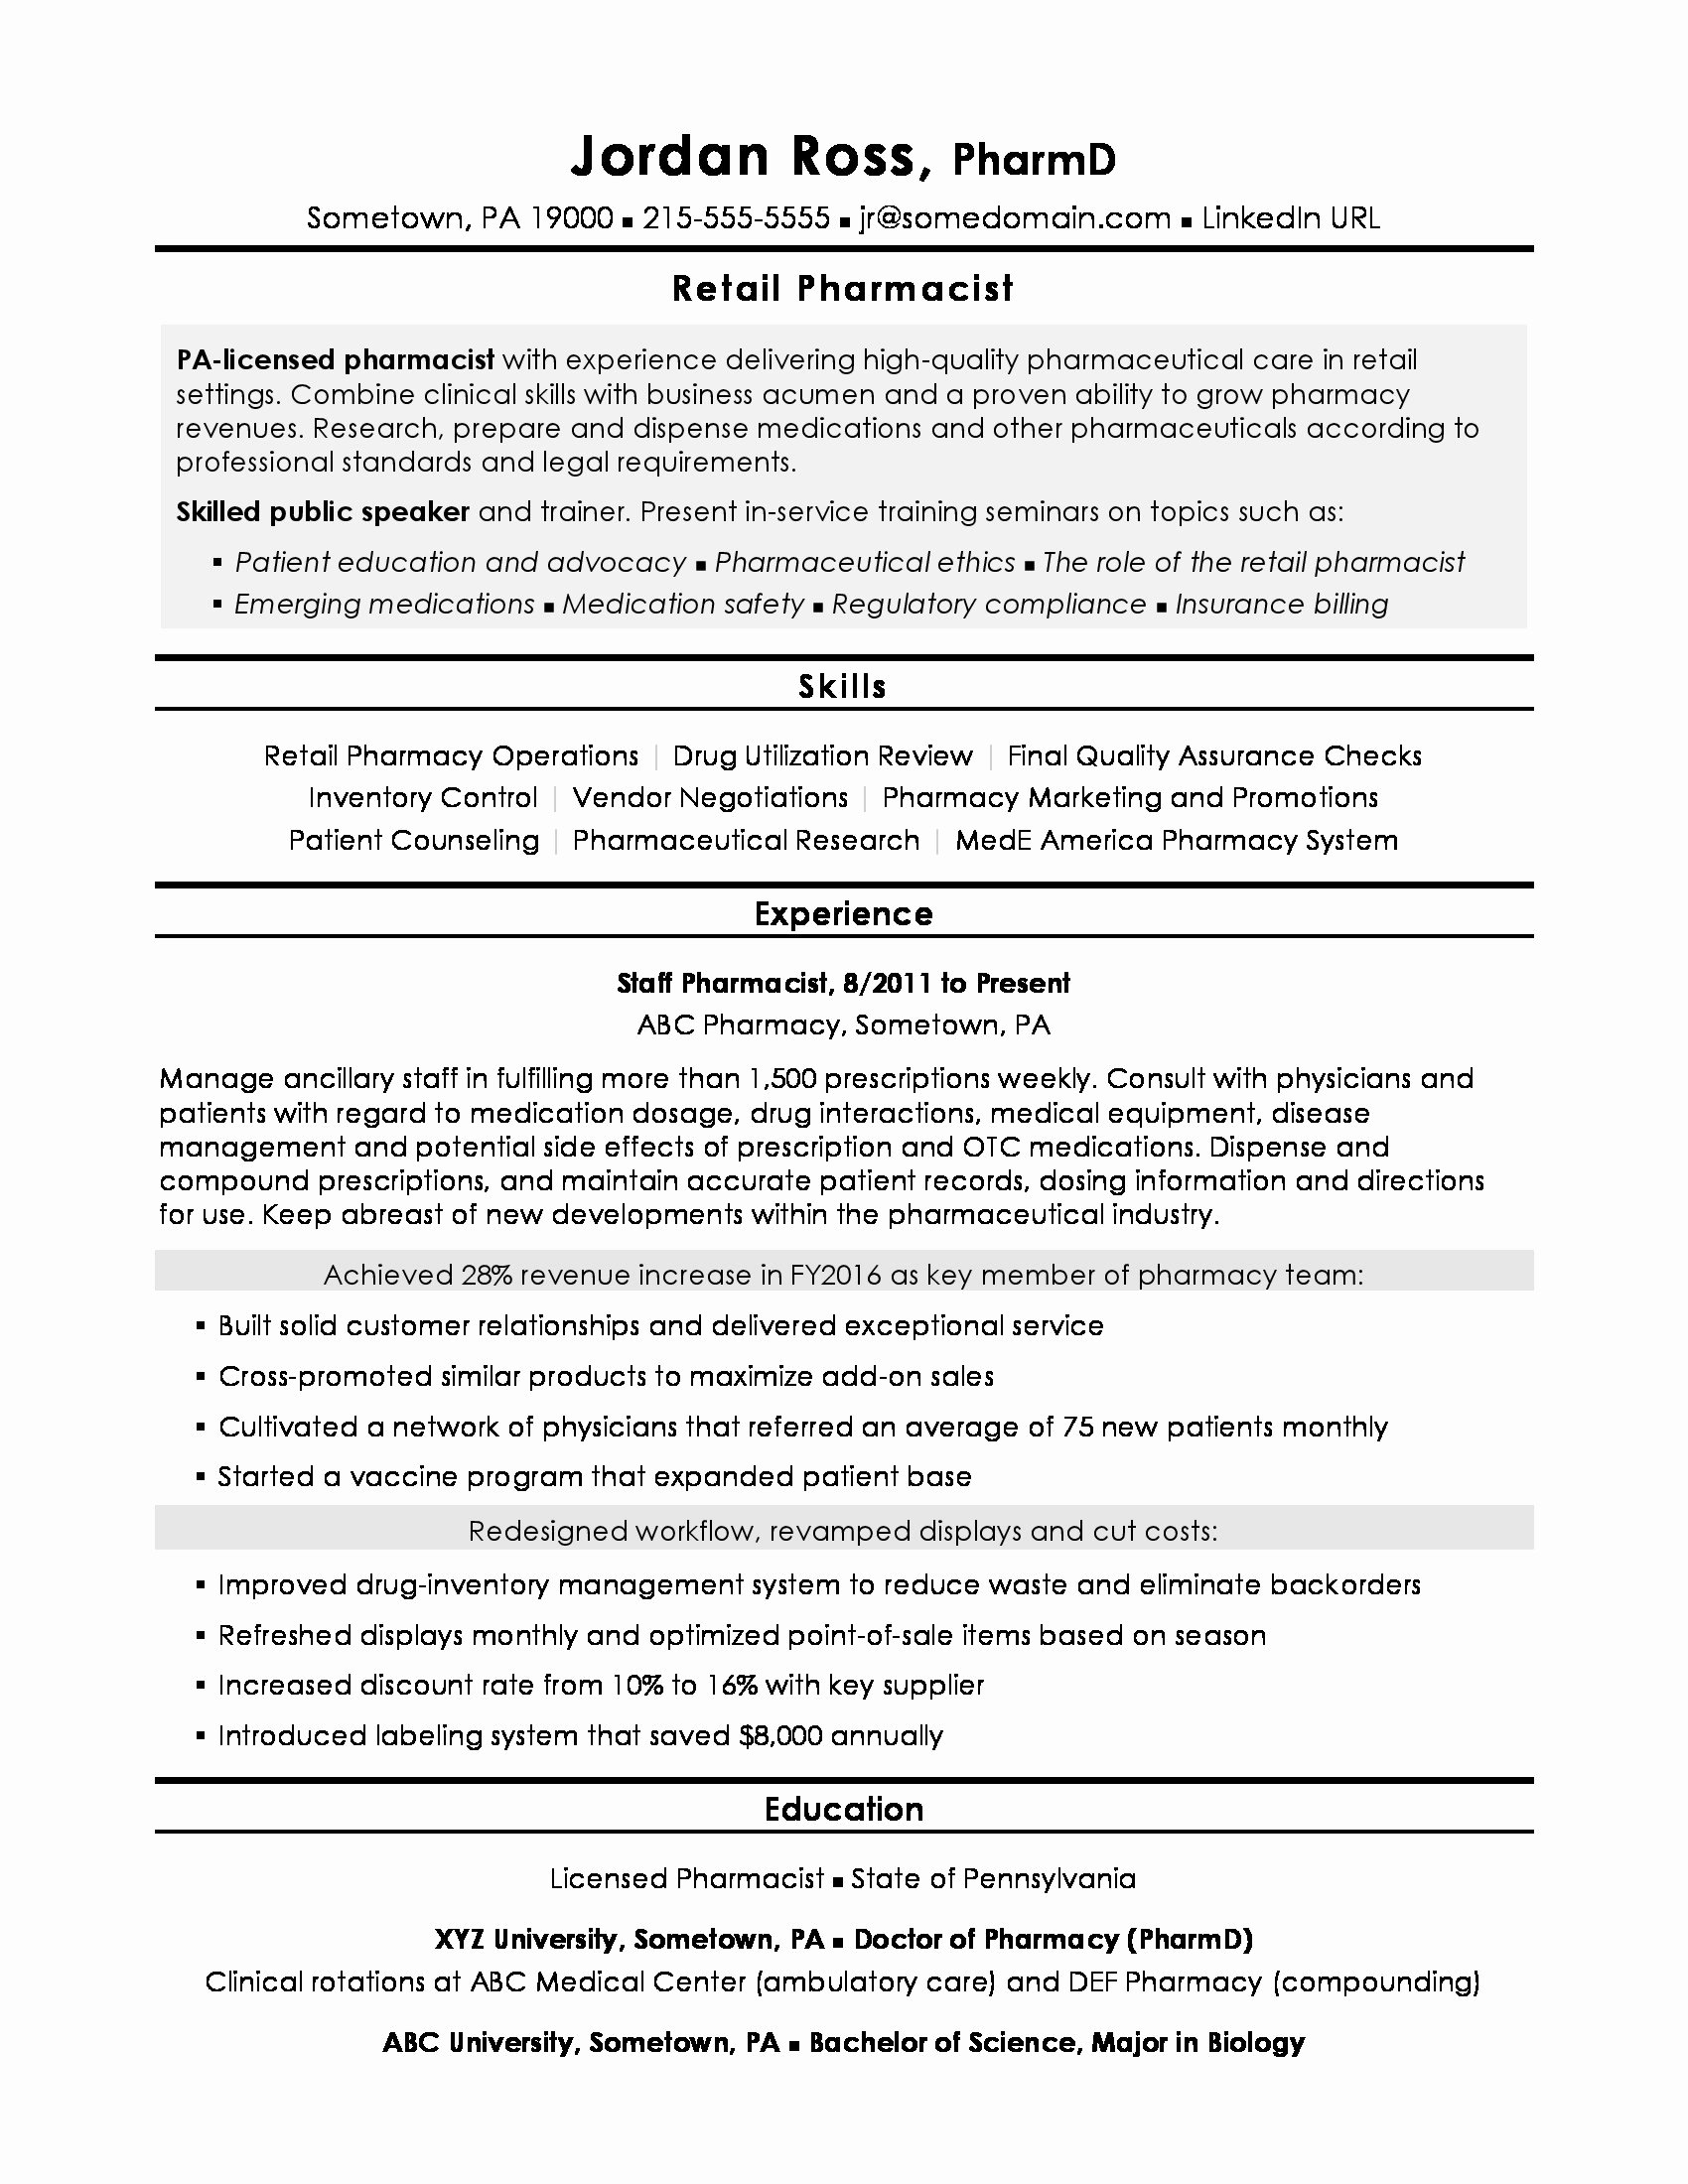 Pharmacy Curriculum Vitae Template Unique Pharmacist Resume Sample